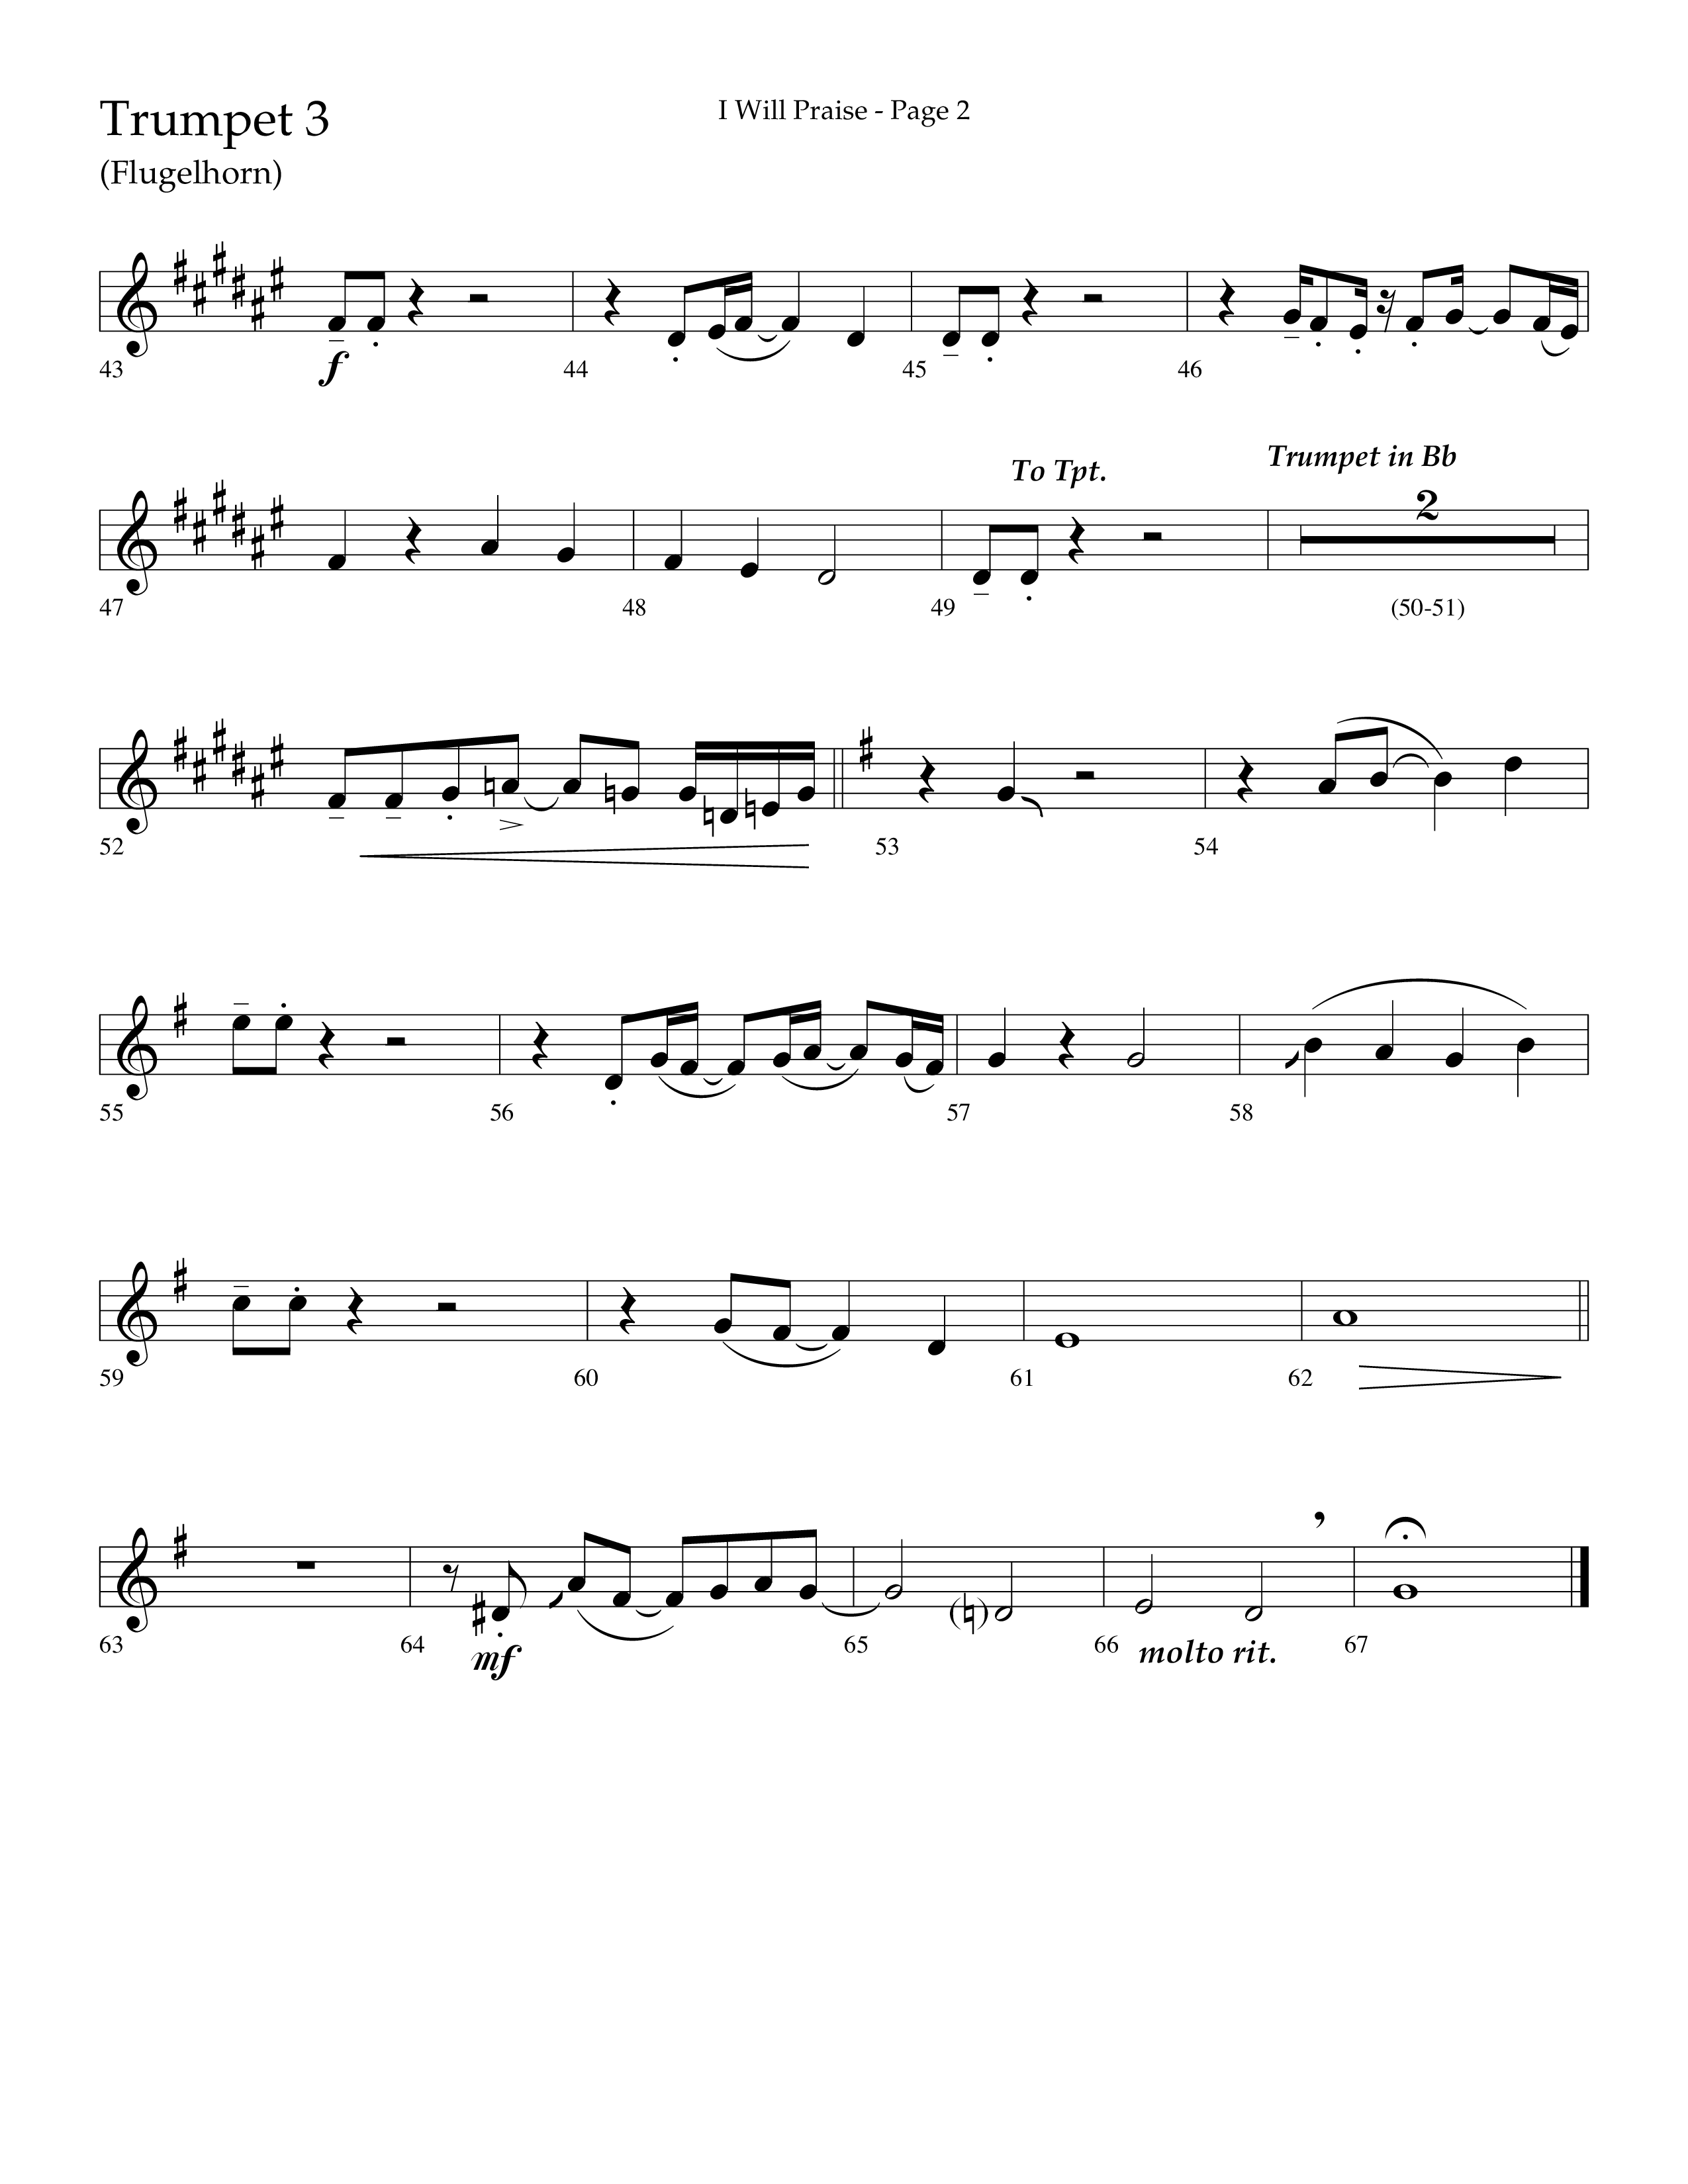 I Will Praise (Choral Anthem SATB) Trumpet 3 (Lifeway Choral / Arr. Mark Willard / Orch. Stephen K. Hand)